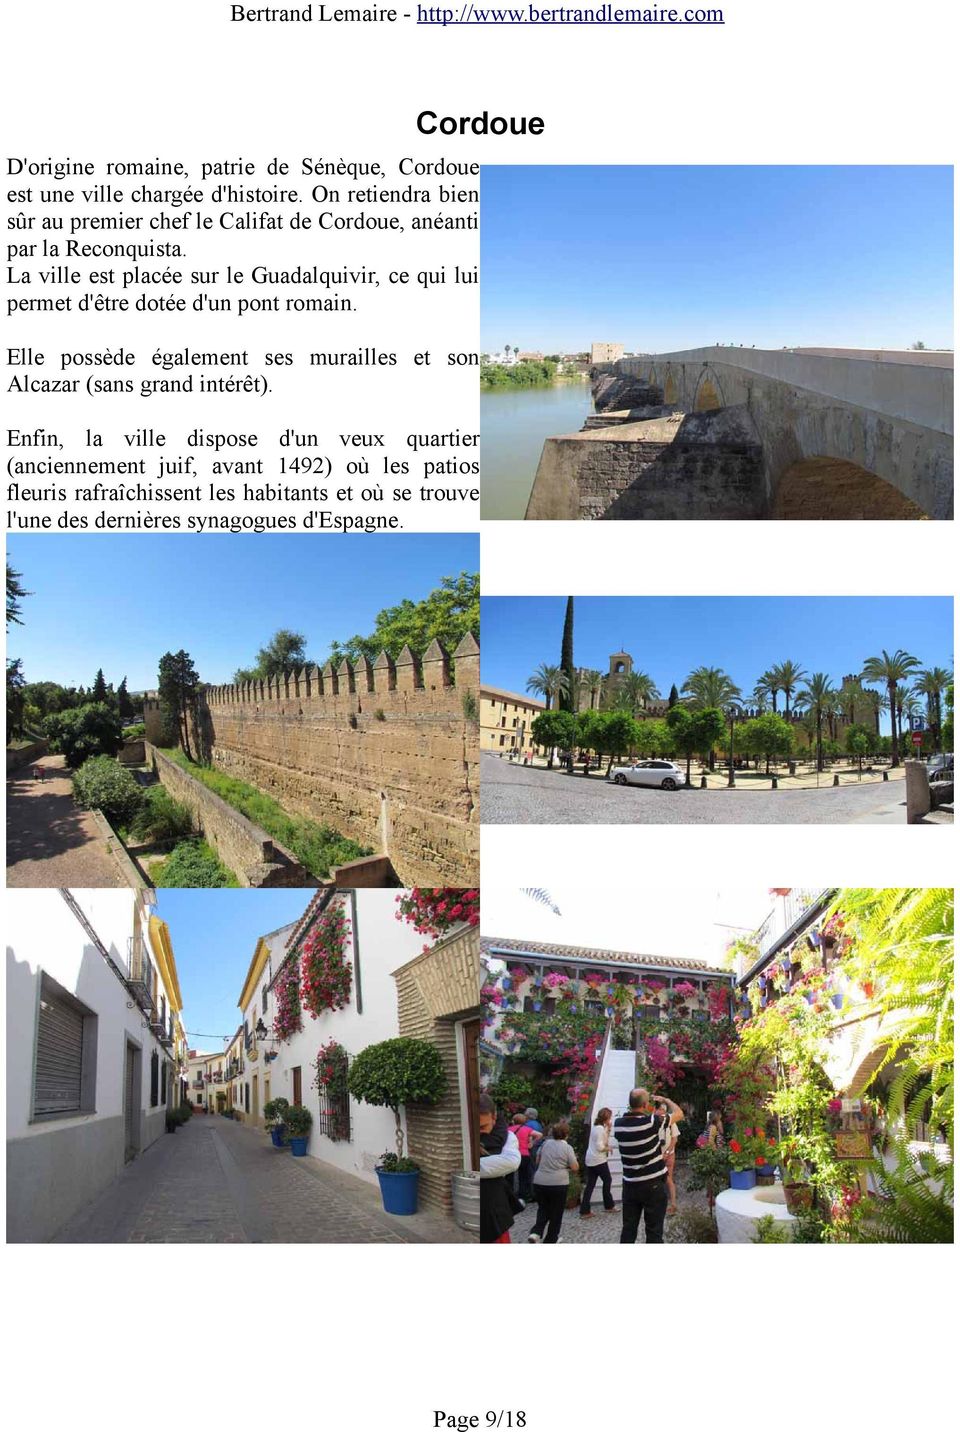 La ville est placée sur le Guadalquivir, ce qui lui permet d'être dotée d'un pont romain.